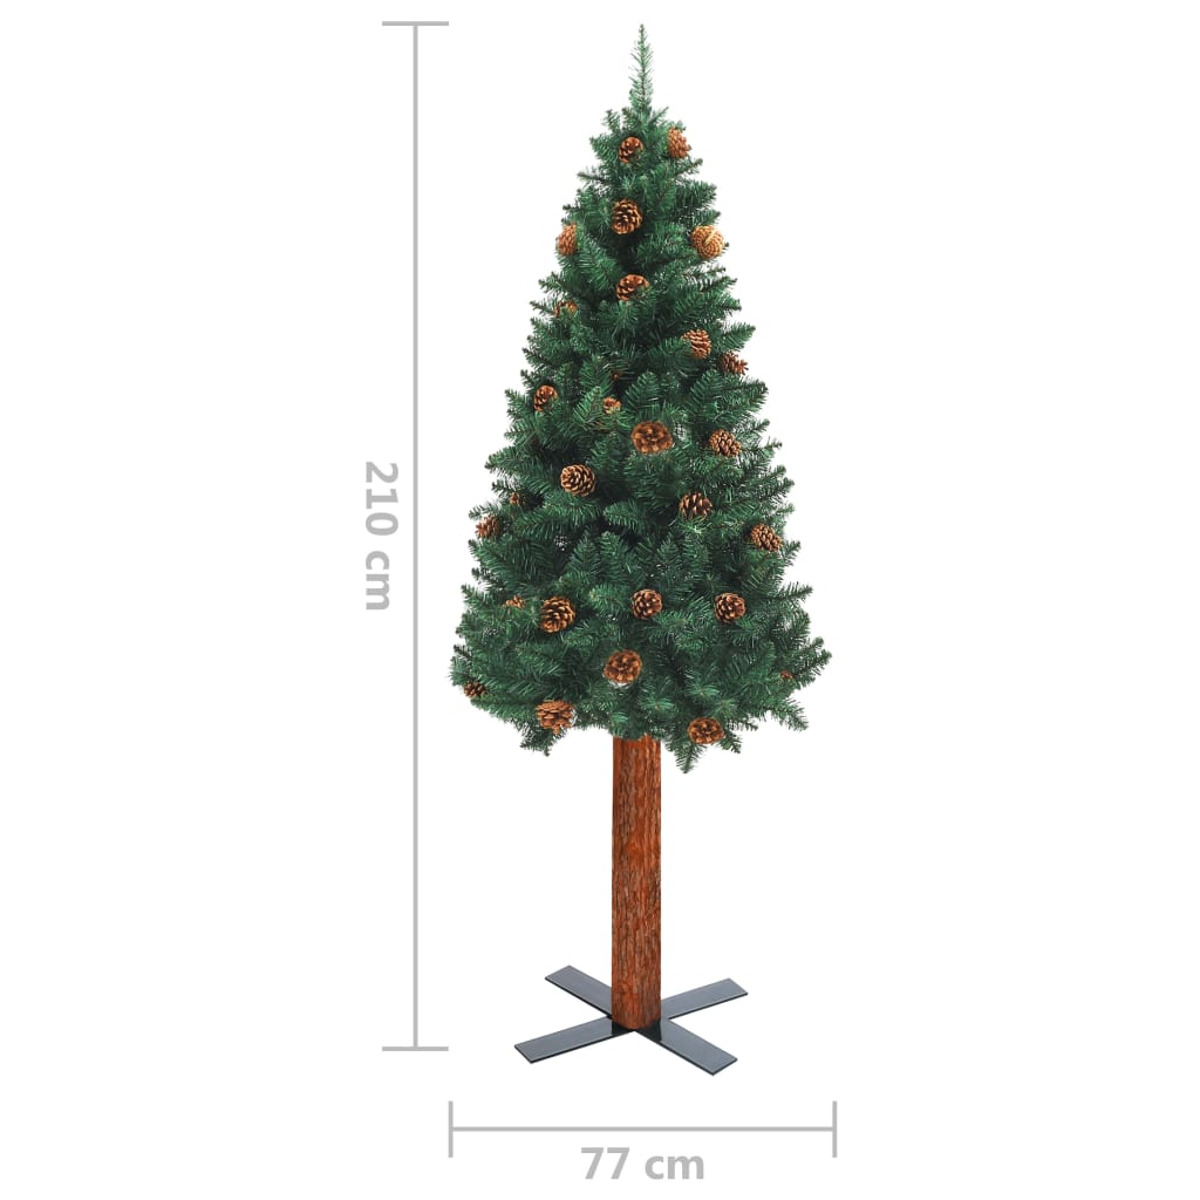 VIDAXL 3077814 Weihnachtsbaum